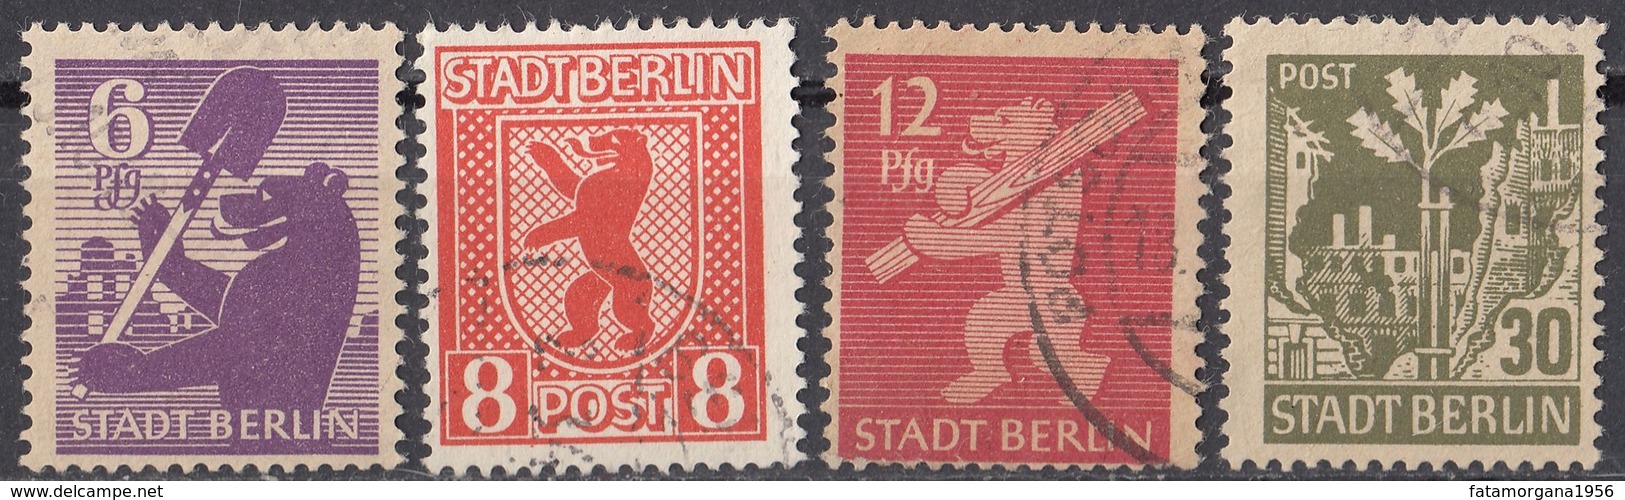 BERLINO, ZONA SOVIETICA - 1945 - Lotto Di 4 Valori Usati: Yvert  2, 3, 5 E 7, Come Da Immagine. - Used